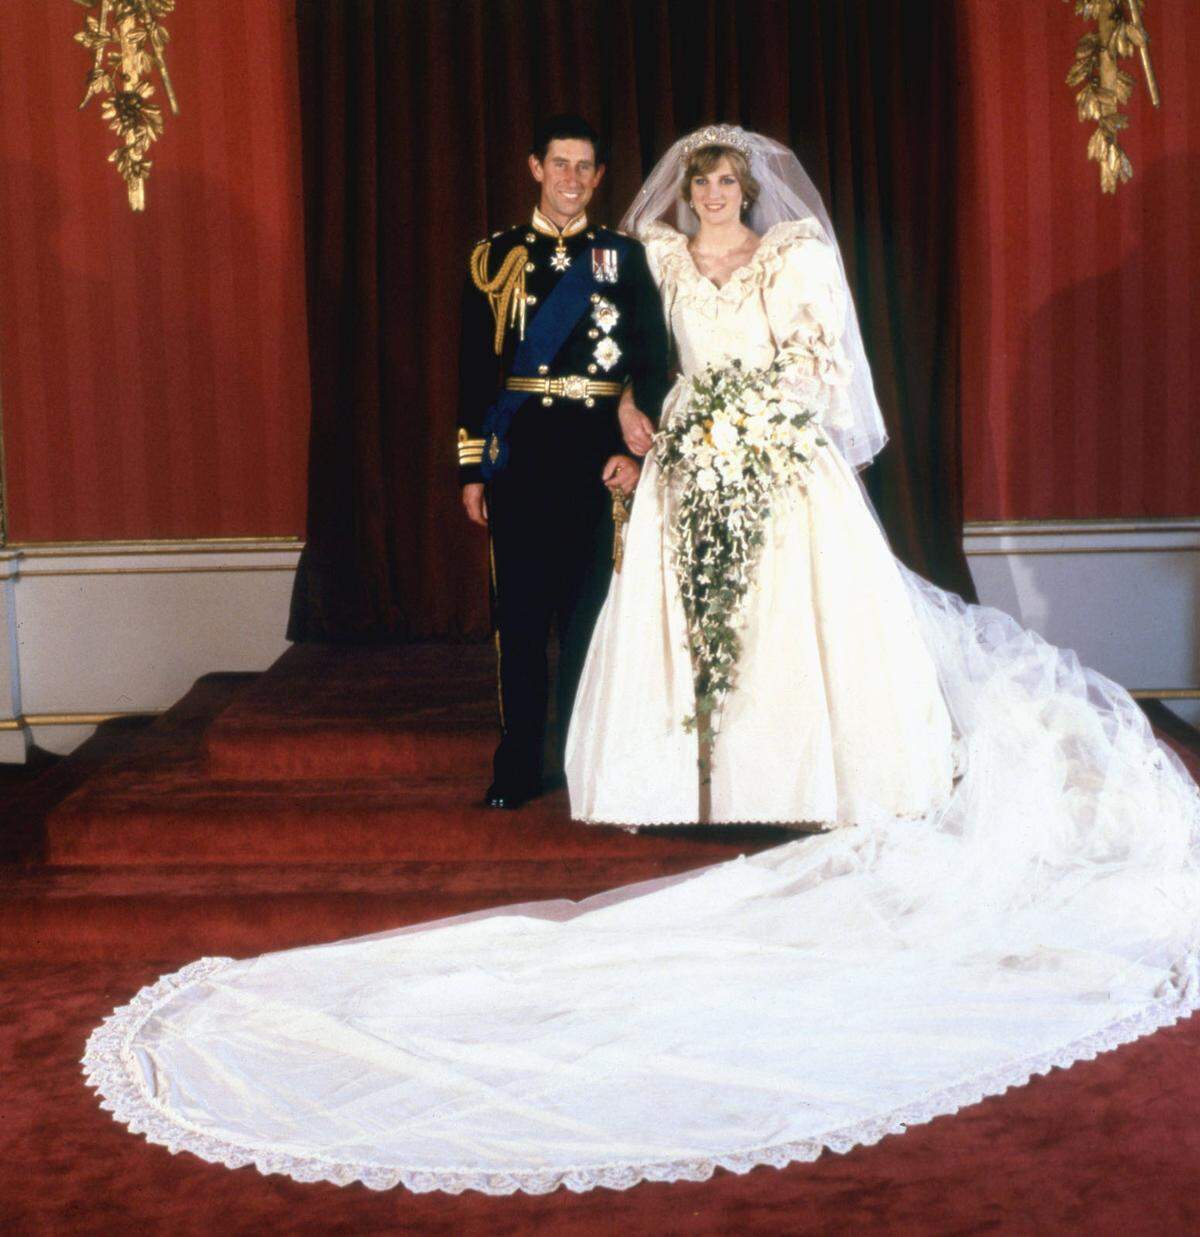 Pompös und romantisch. Das Kleid von Prinzessin Diana, das sie zu ihrer Hochzeit mit Prinz Charles wählte, ging in die Geschichte ein. David und Elizabeth Emanuel waren die Designer im Hintergrund.